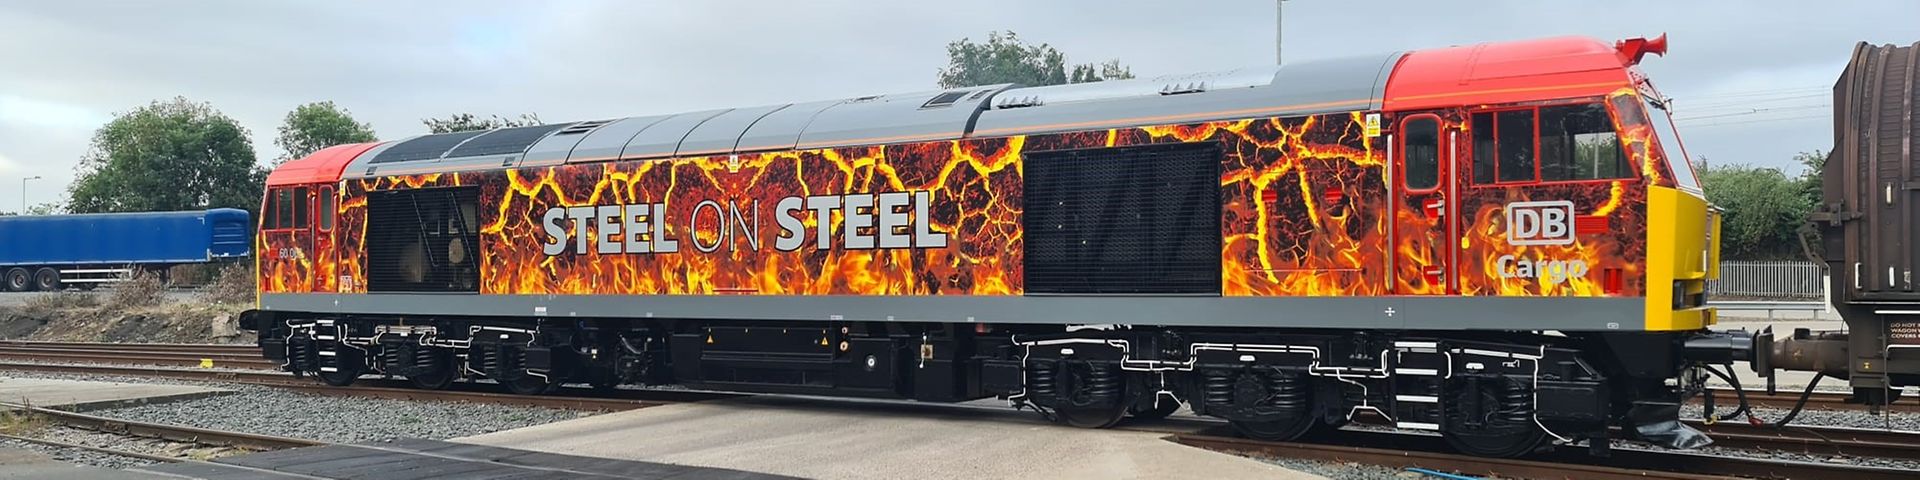 Steel on steel side view